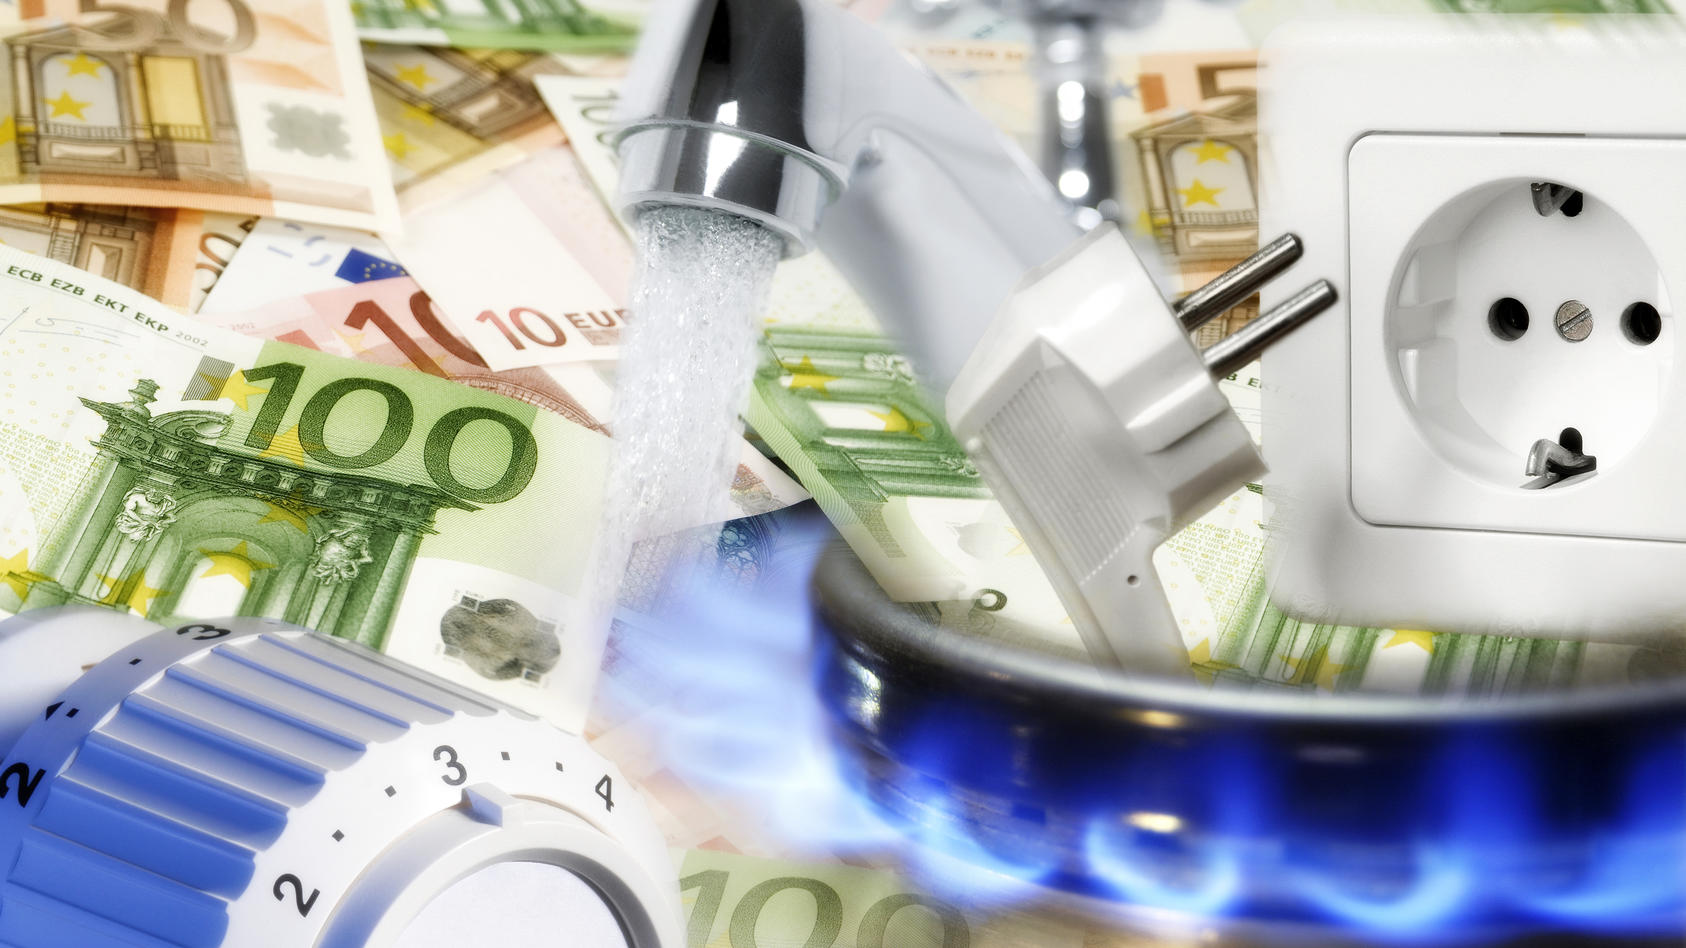 Skvelá správa! Vláda má poslať Slovákom šeky s financiami kvôli drahým energiám, Slovákom pomôže stovkami miliónov eur